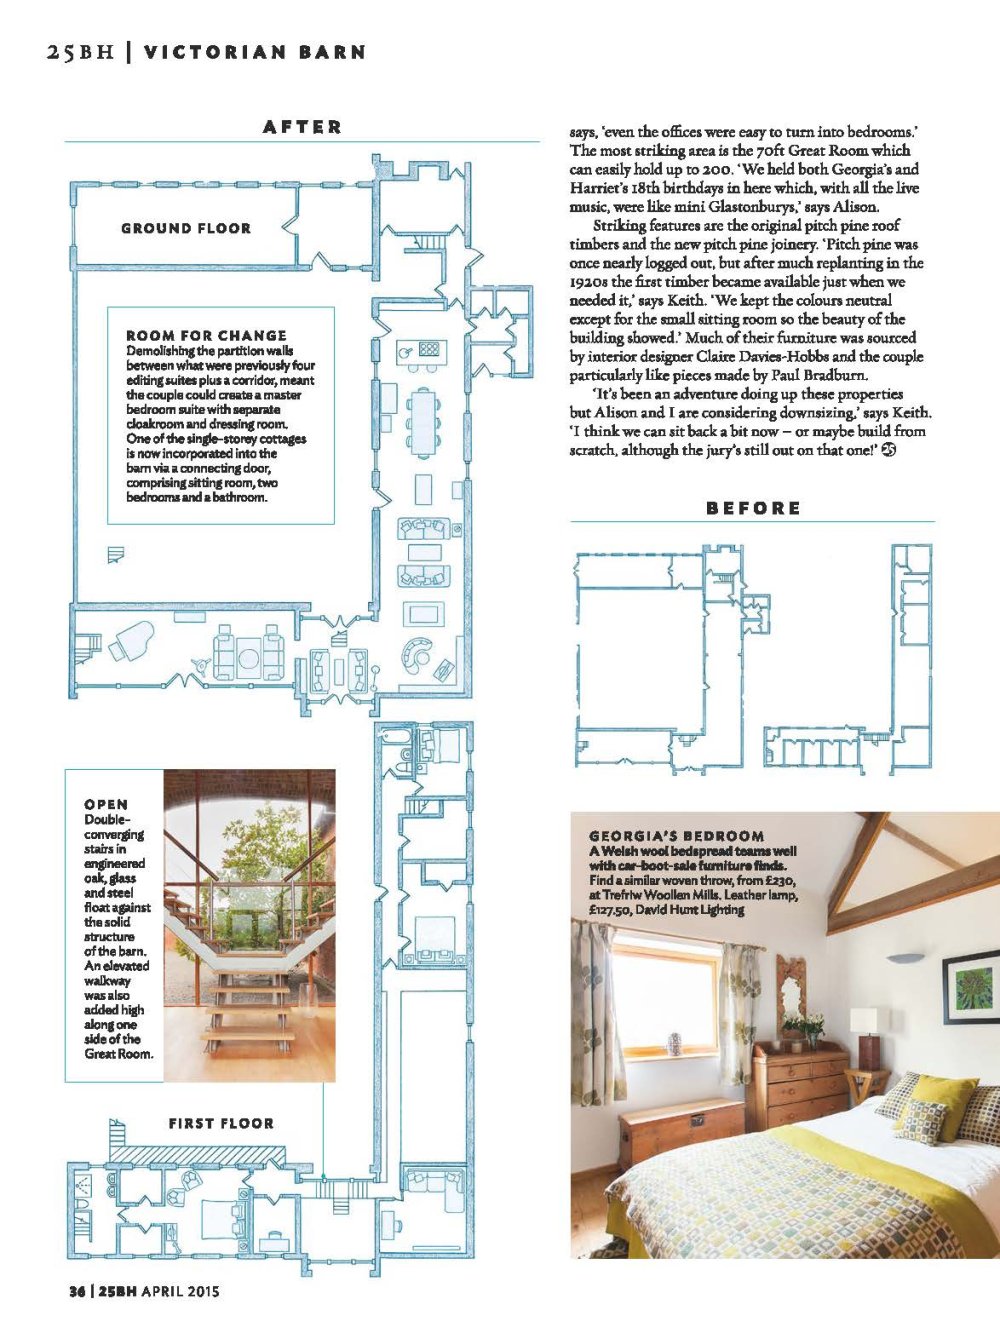 国外杂志201504_25 Beautiful Homes - April 2015_页面_025.jpg